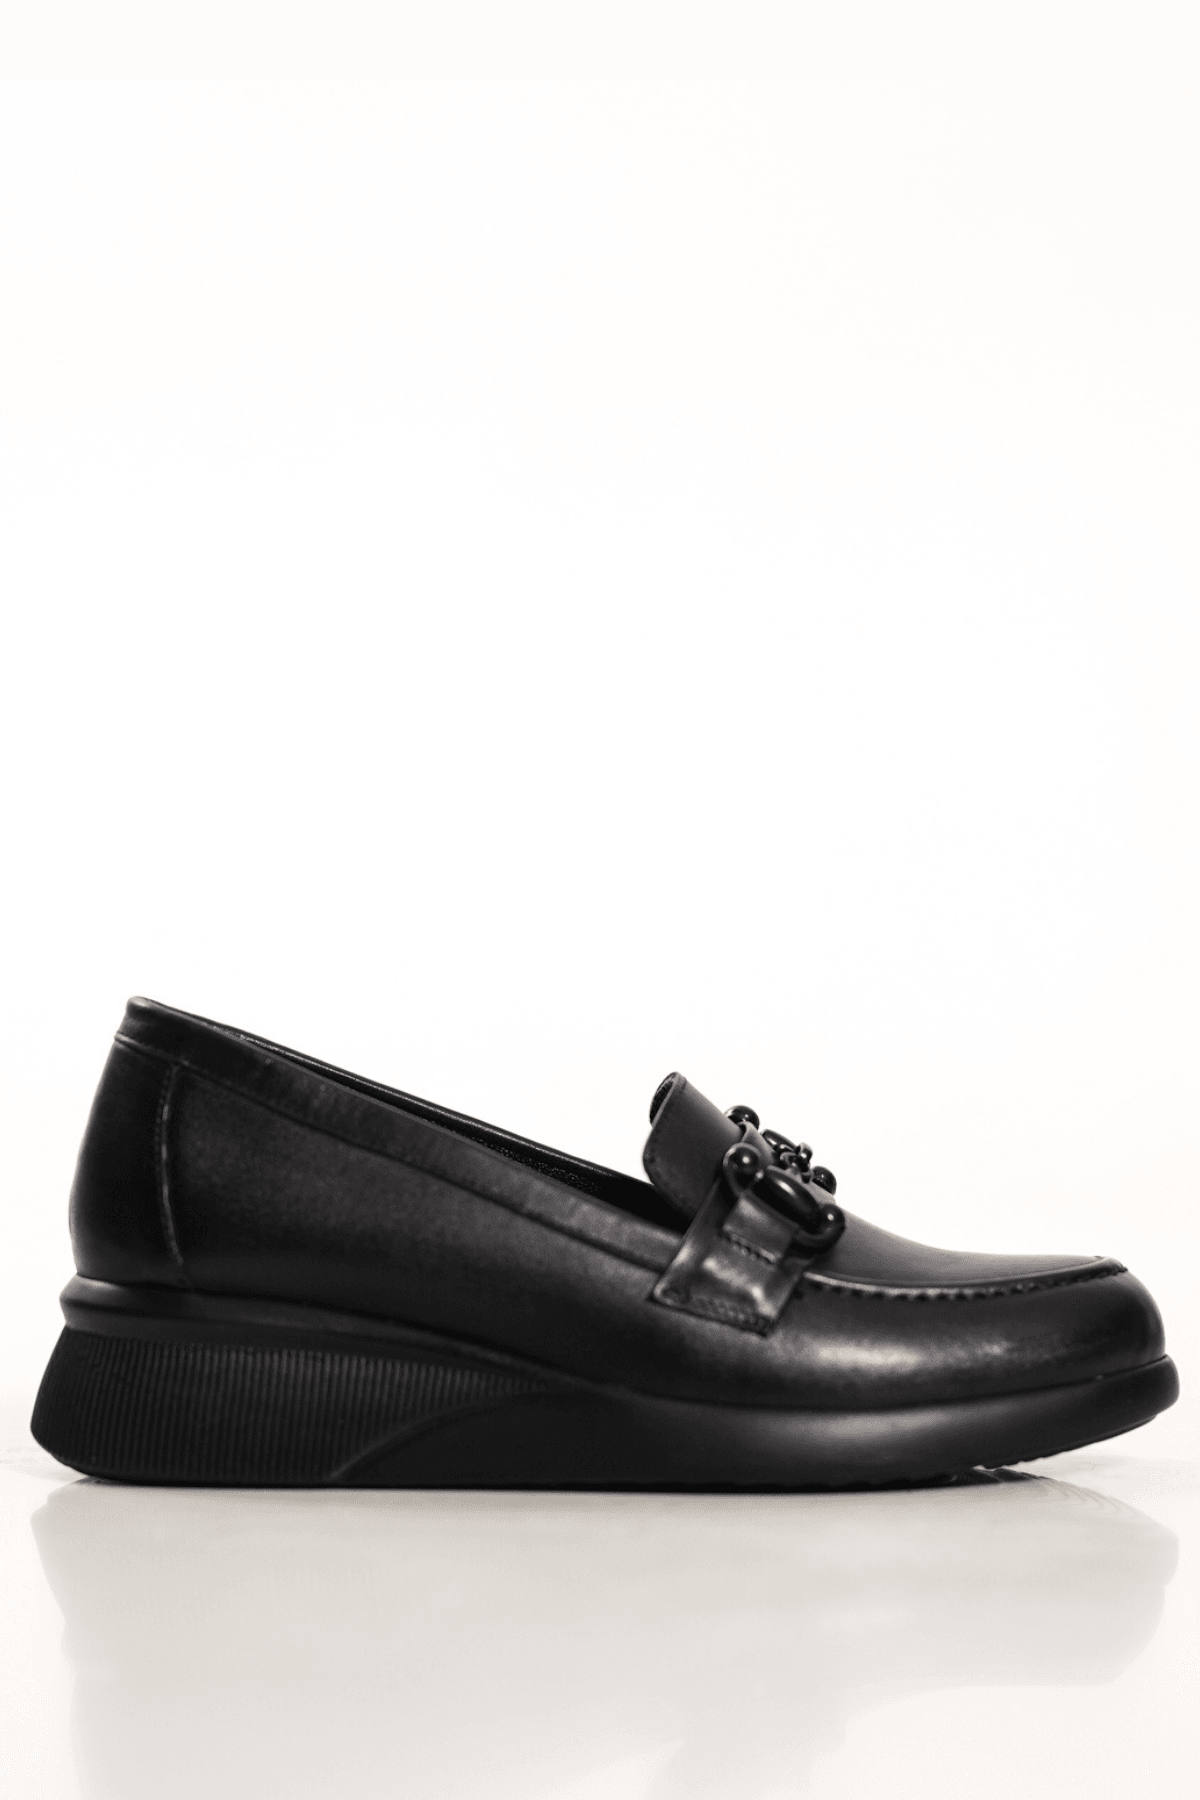 Hakiki Deri Loafer Tokalı Dolgu Topuk Kadın Günlük Ayakkabı - Siyah